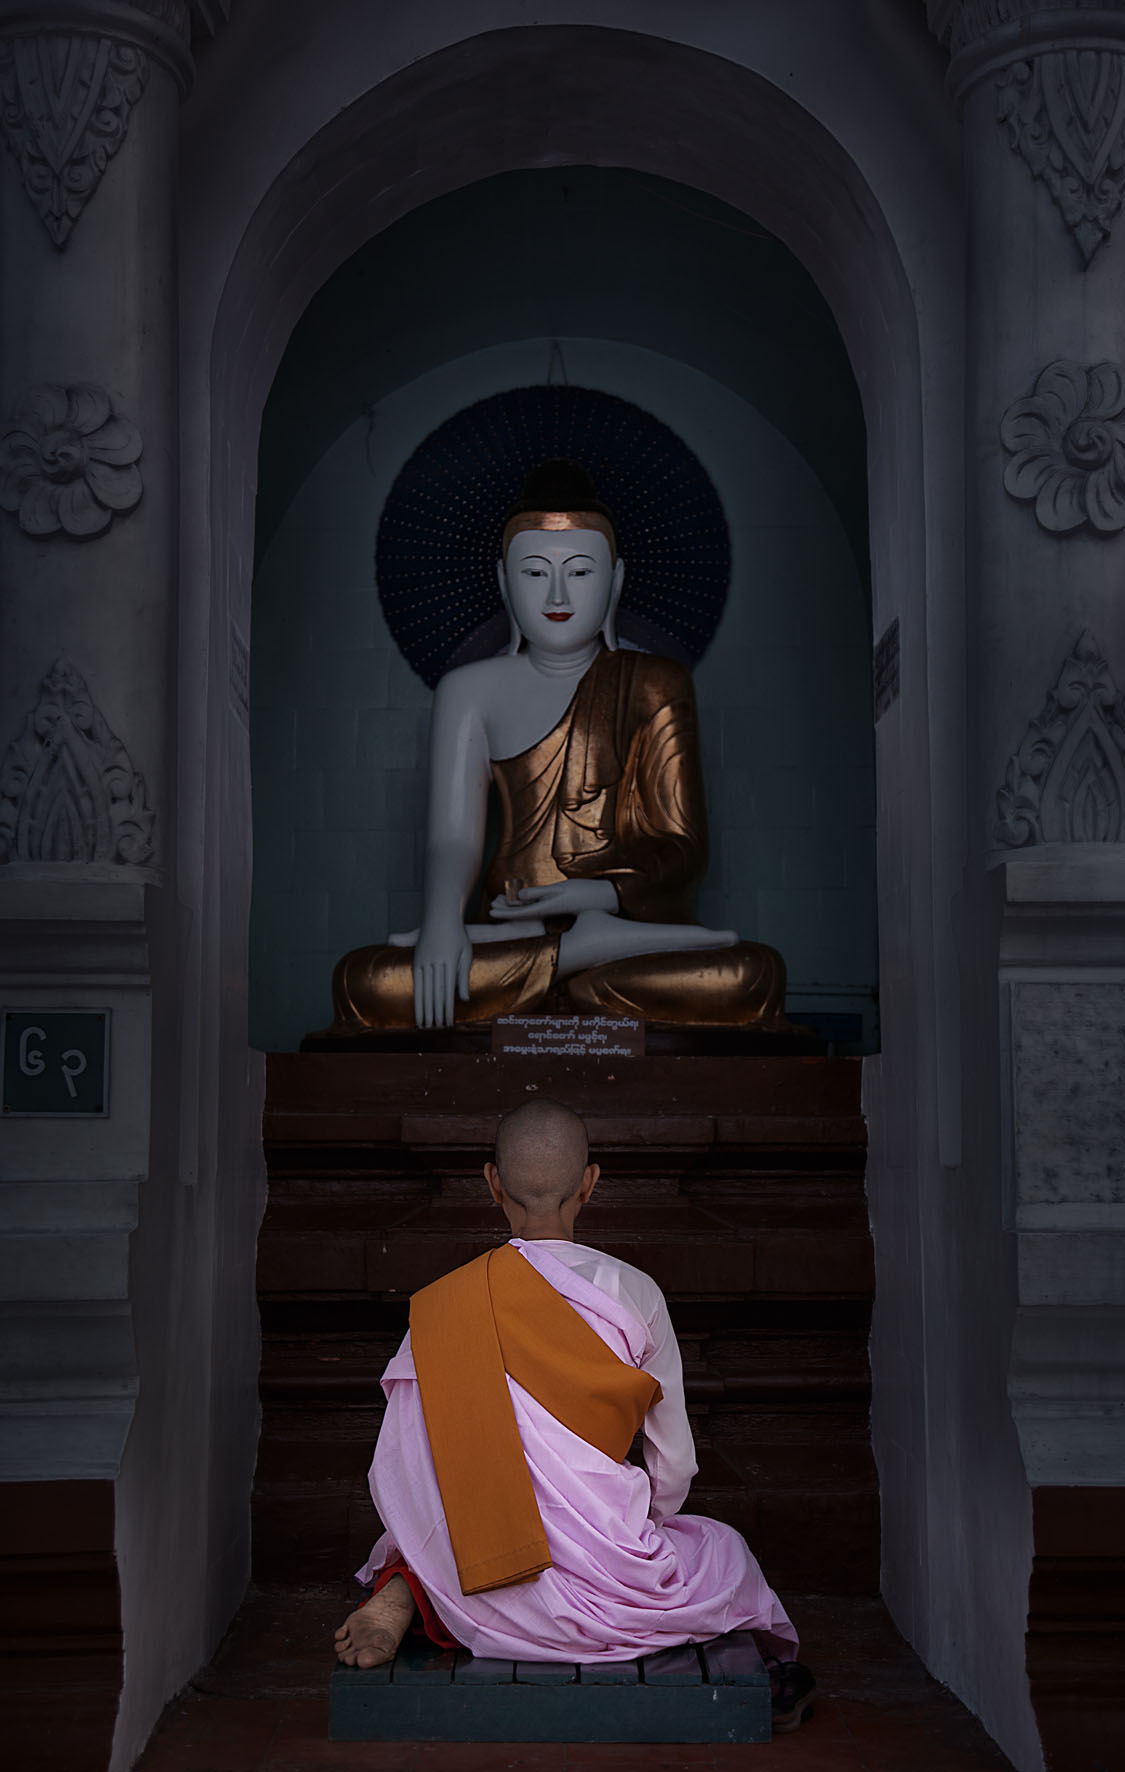 Mirroring the Buddha